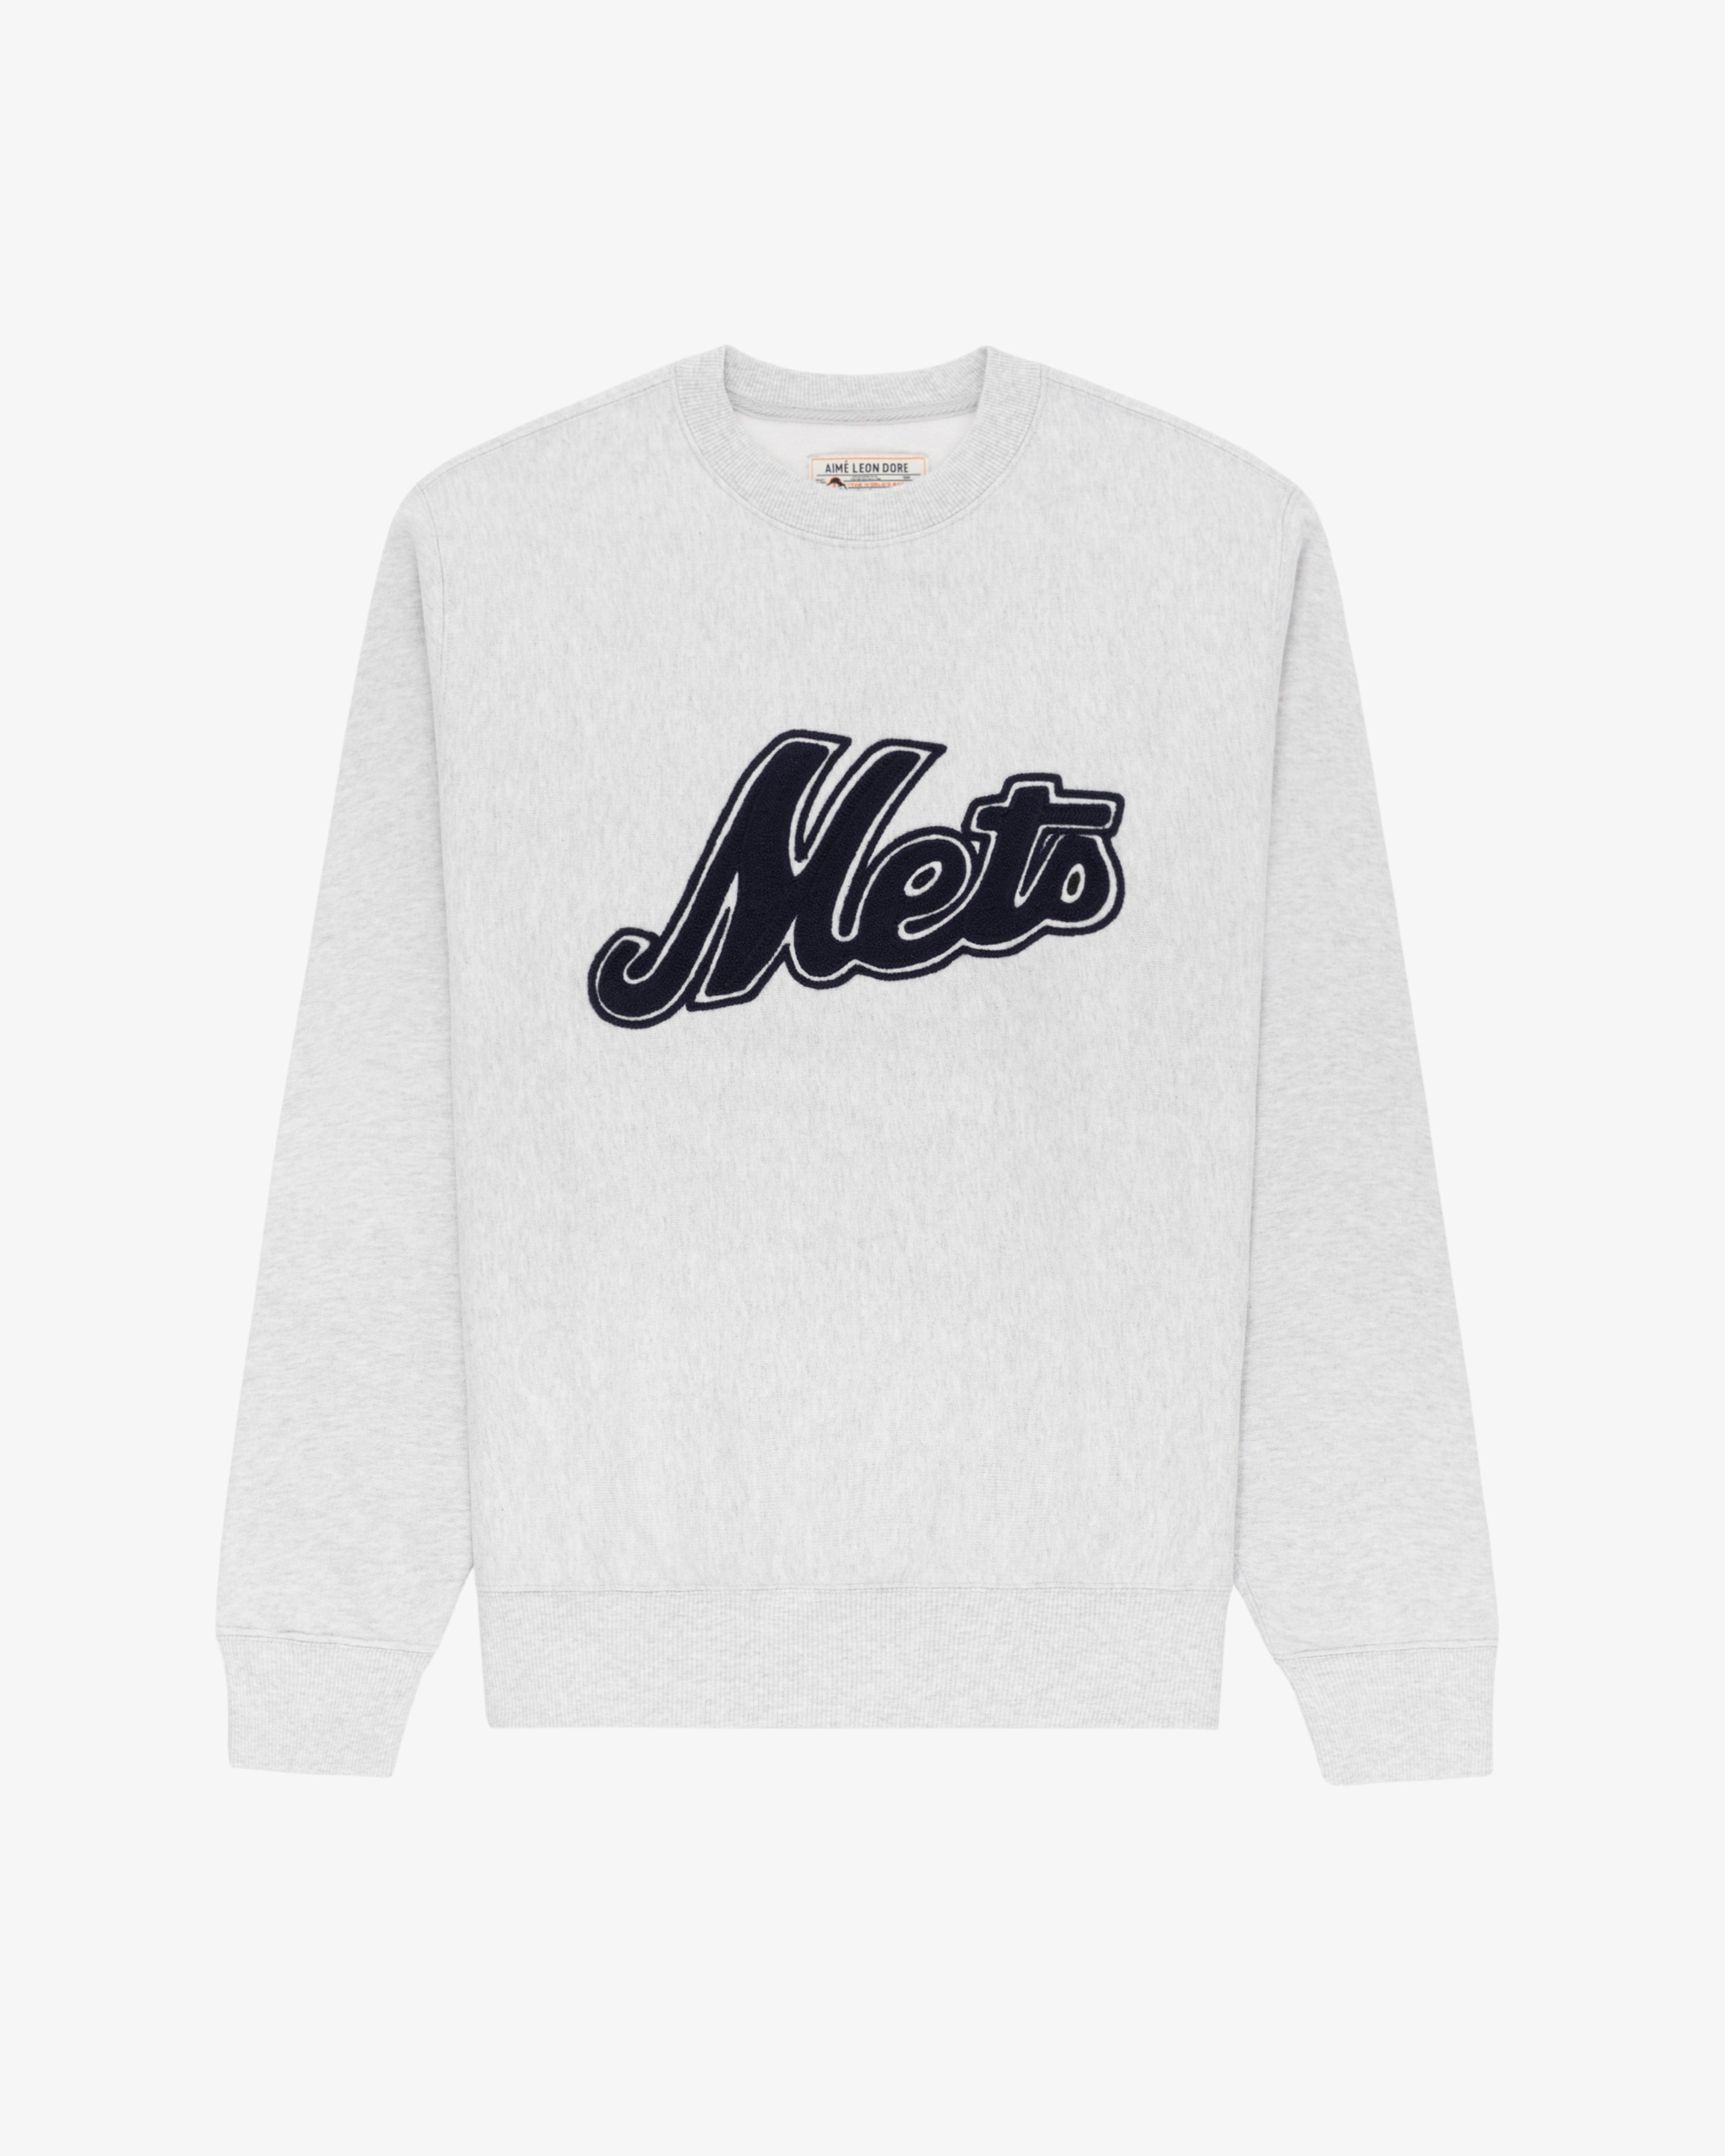 ALD / New York Mets Chainstitch Crewneck Sweatshirt